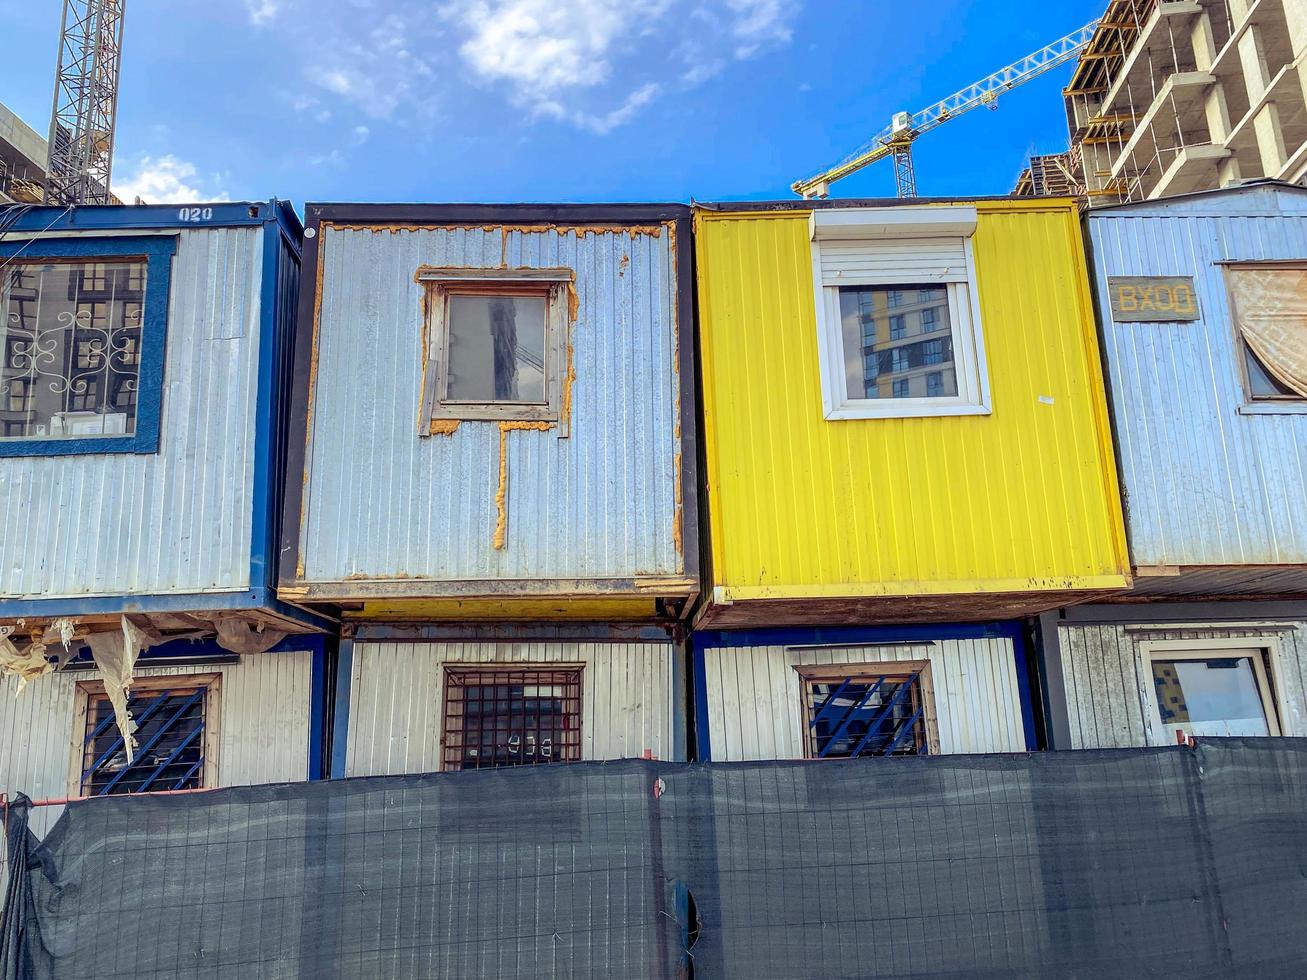 hus för fattig människor. tillfällig bostads- byggnader. hus för byggare från godsvagnar med fönster i två rader. ljus logga hus målad gul och grå foto